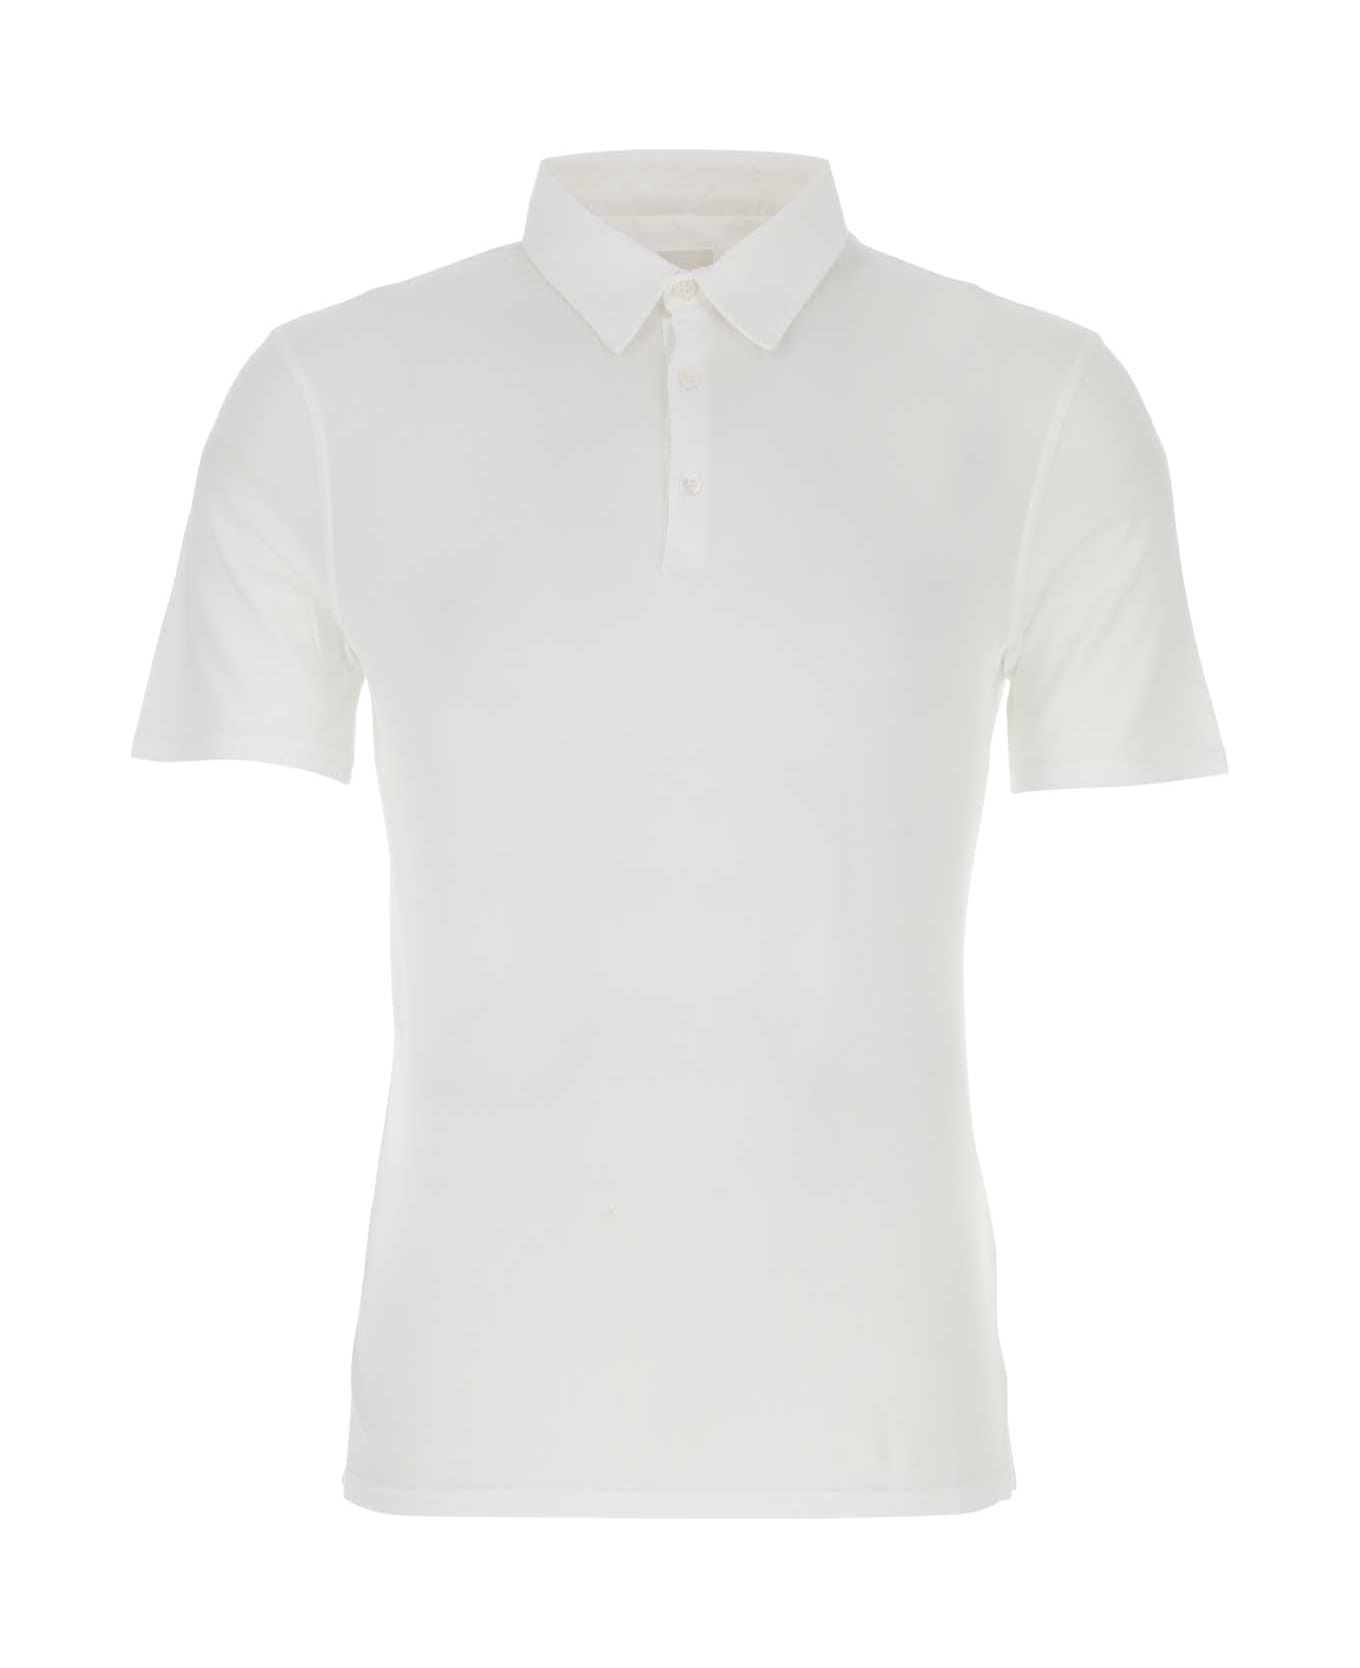 Fedeli White Cotton Polo Shirt - White